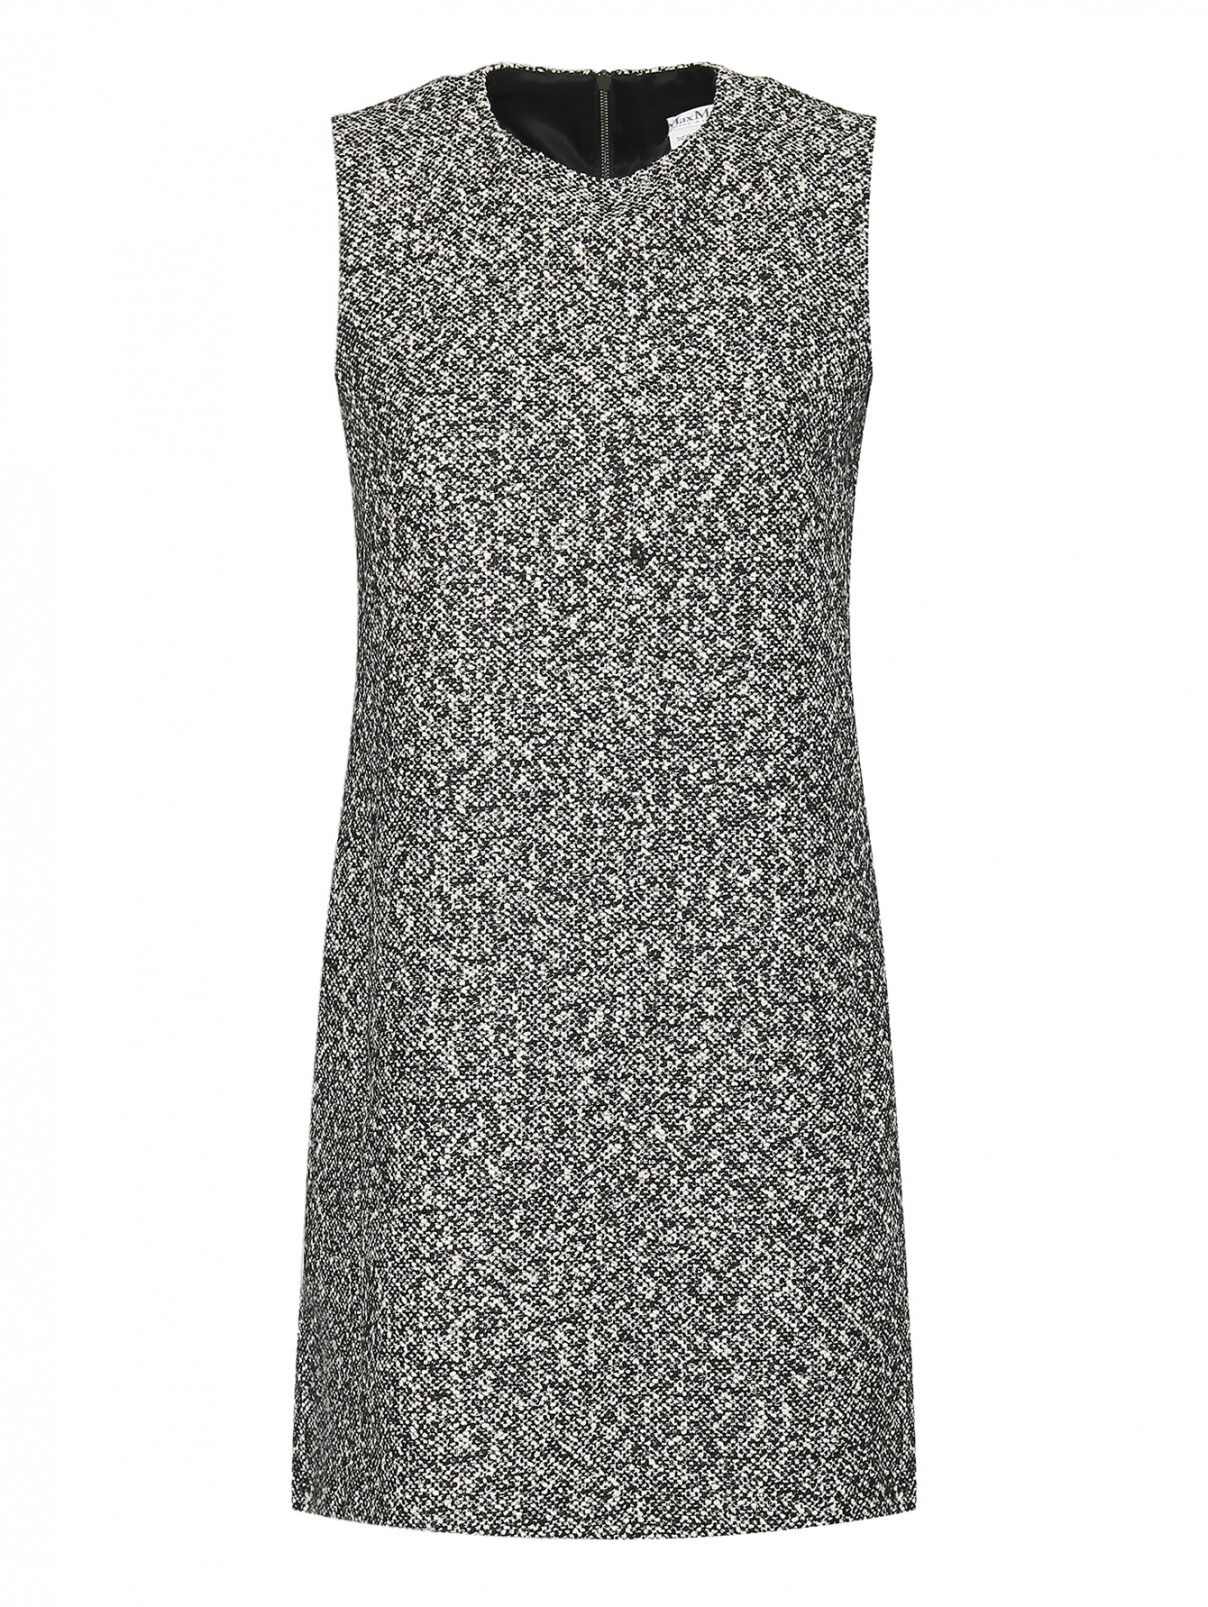 Платье-мини без рукавов с карманами Max Mara  –  Общий вид  – Цвет:  Черный